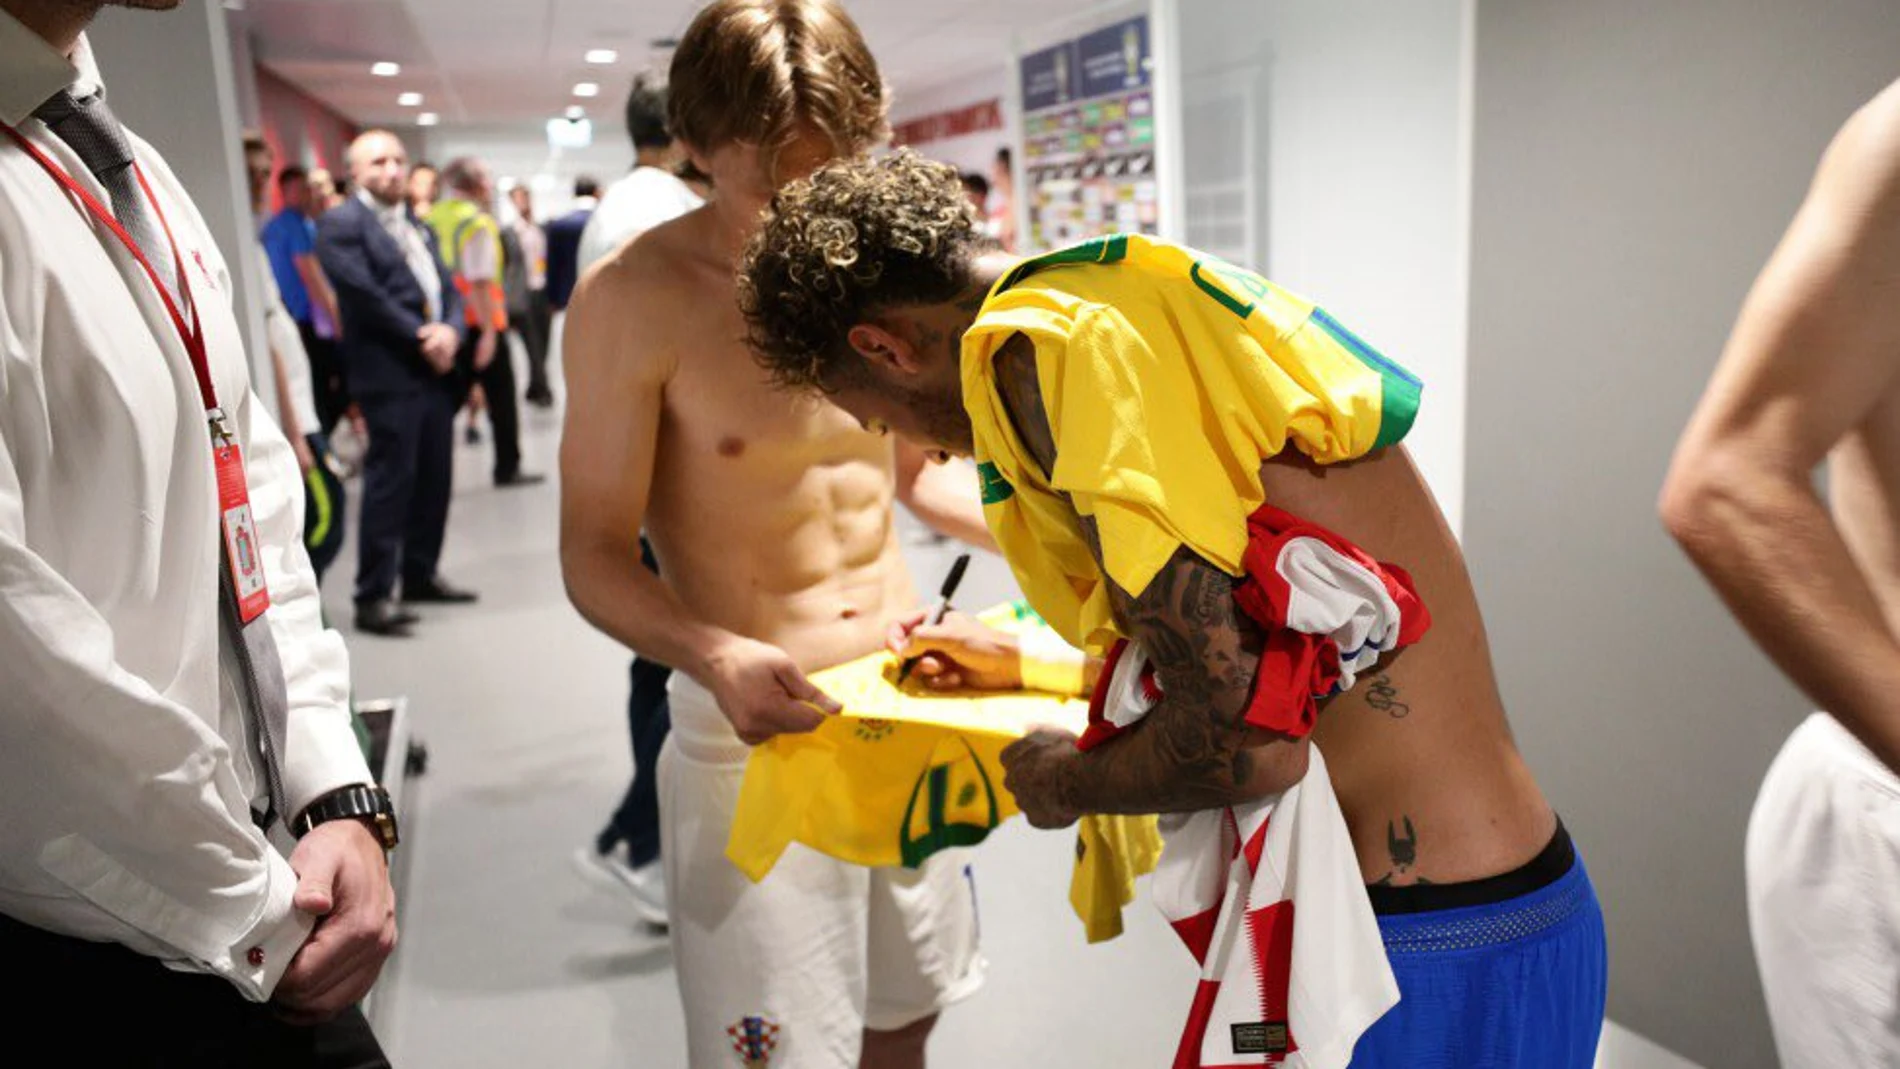 Modric y Neymar se intercambiaron las camisetas / Foto: @CBF_Futebol